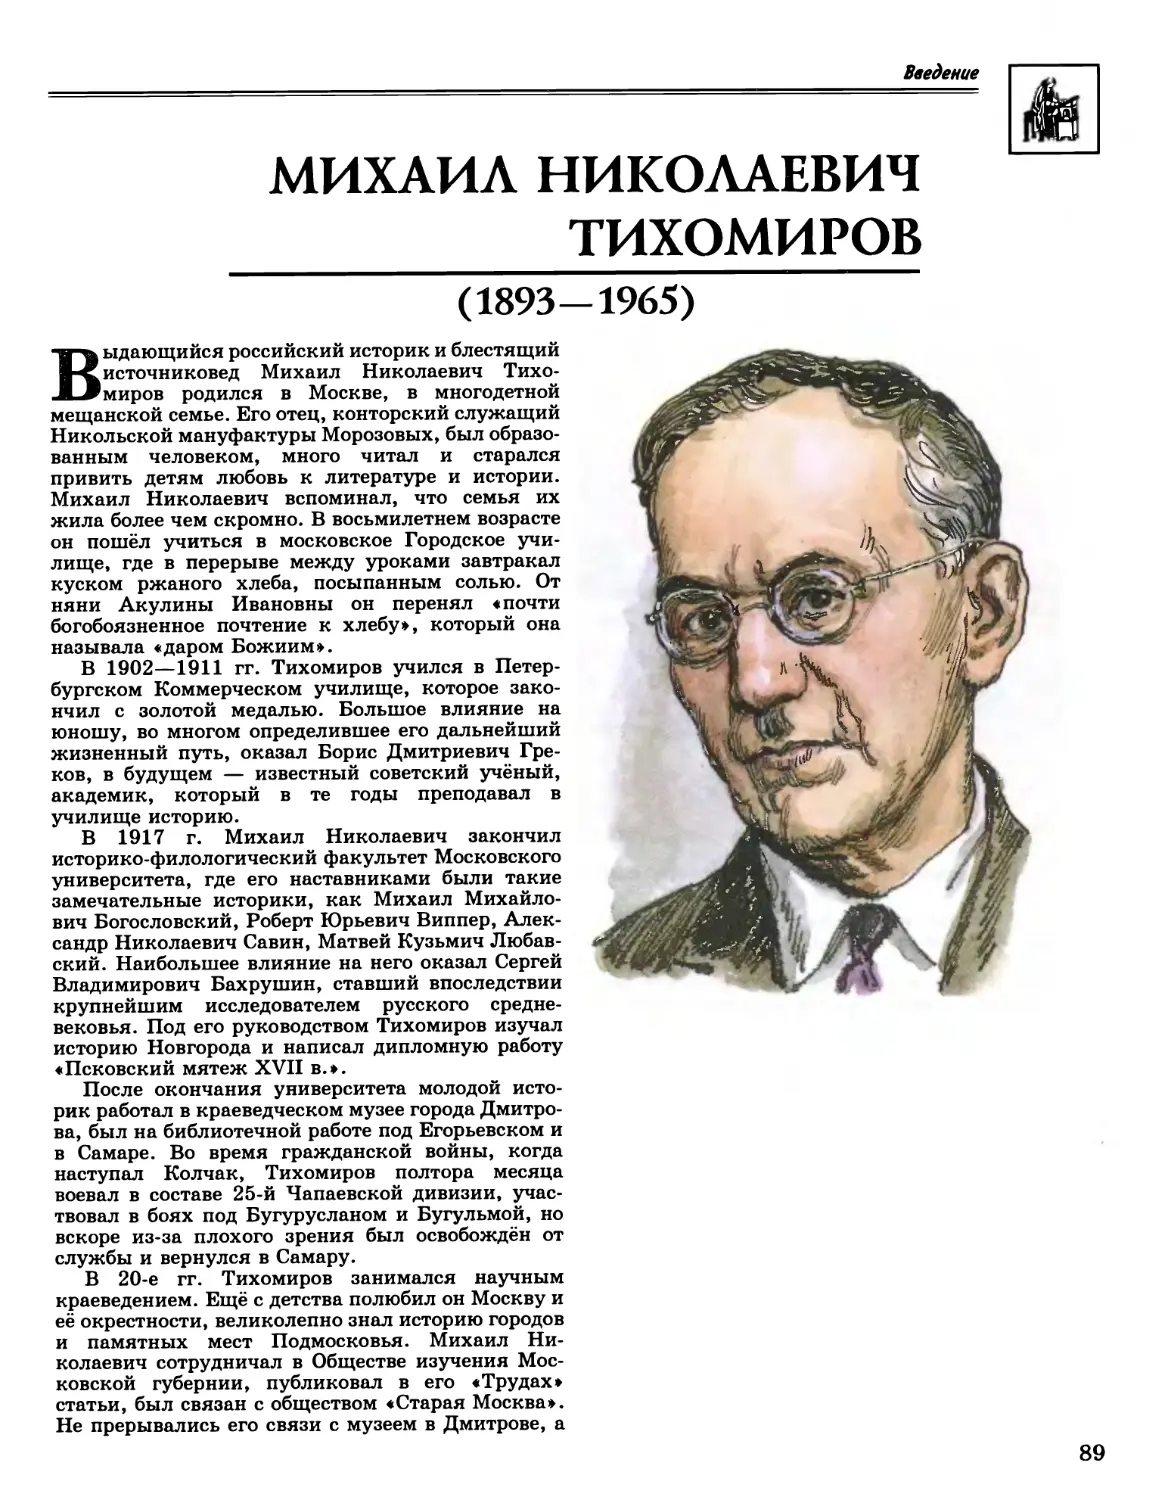 Михаил Николаевич Тихомиров